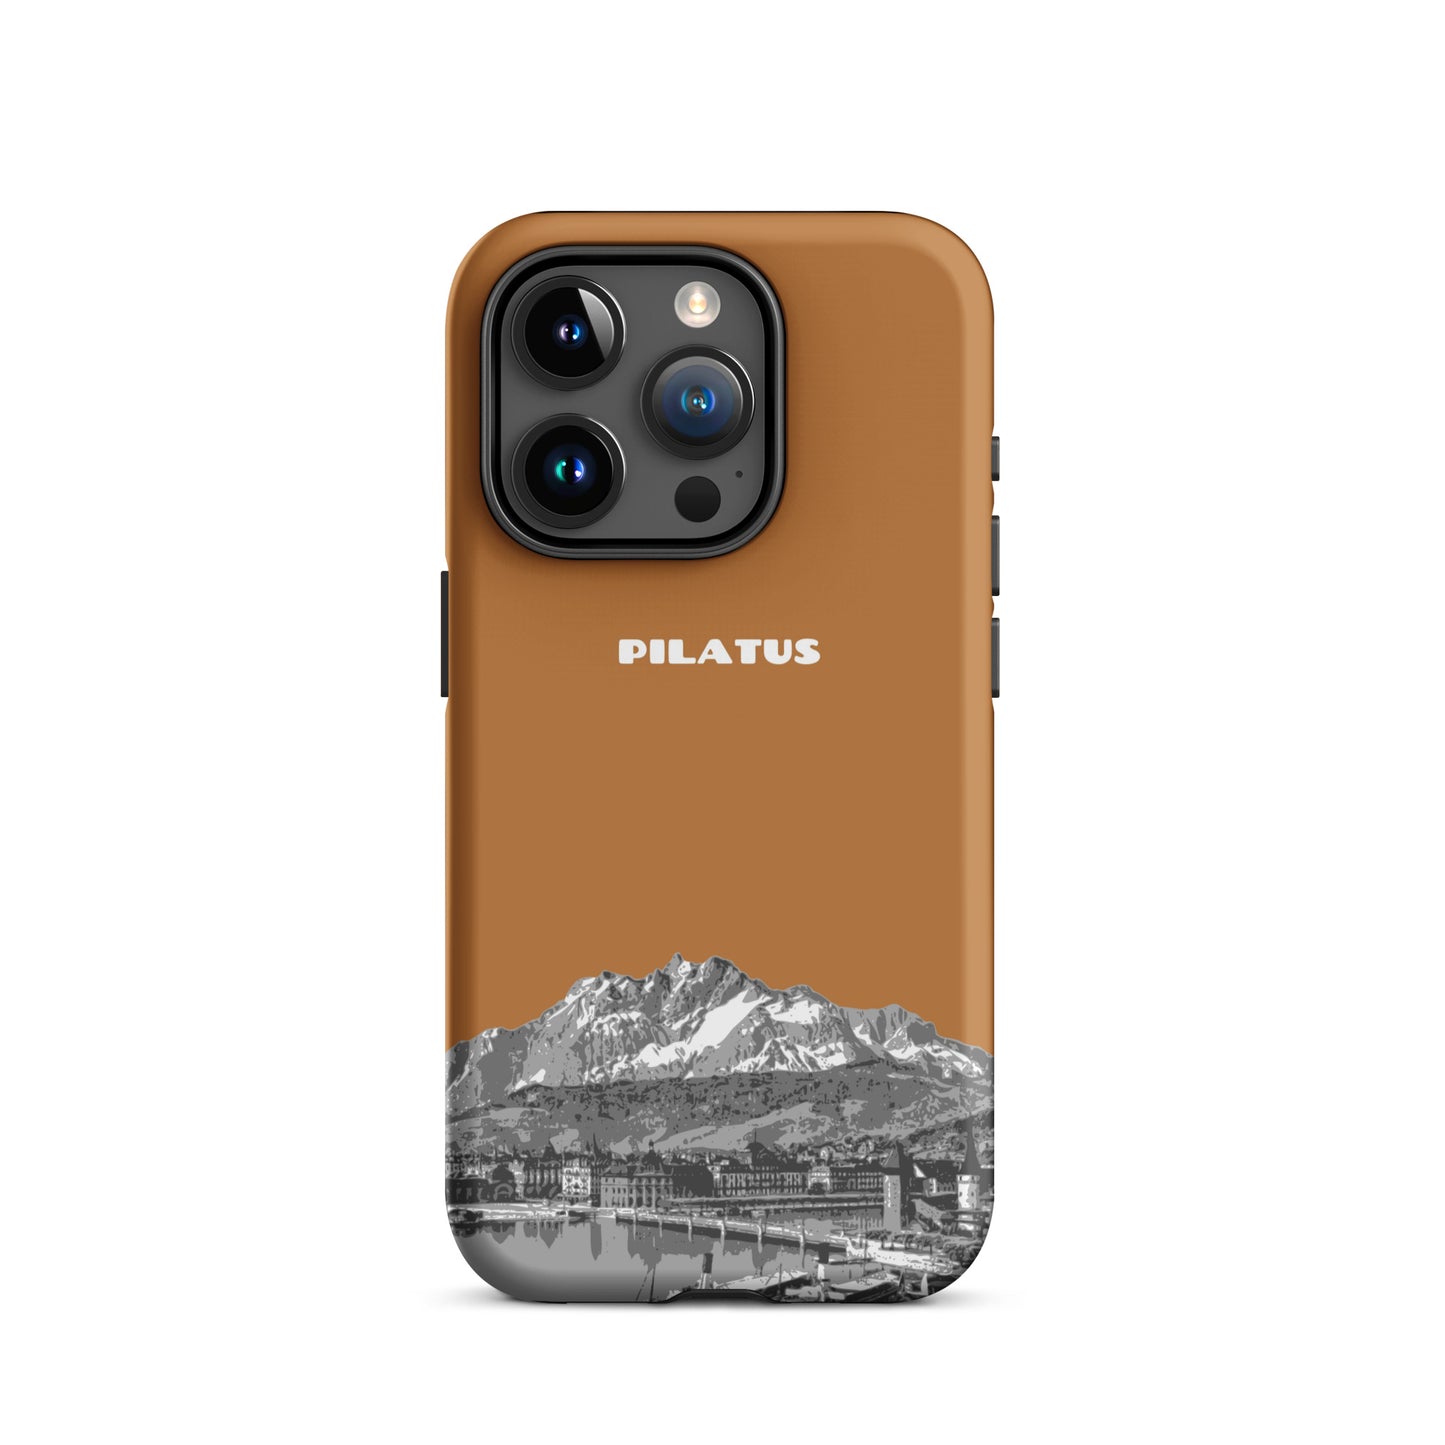 iPhone Case - Pilatus - Kupfer